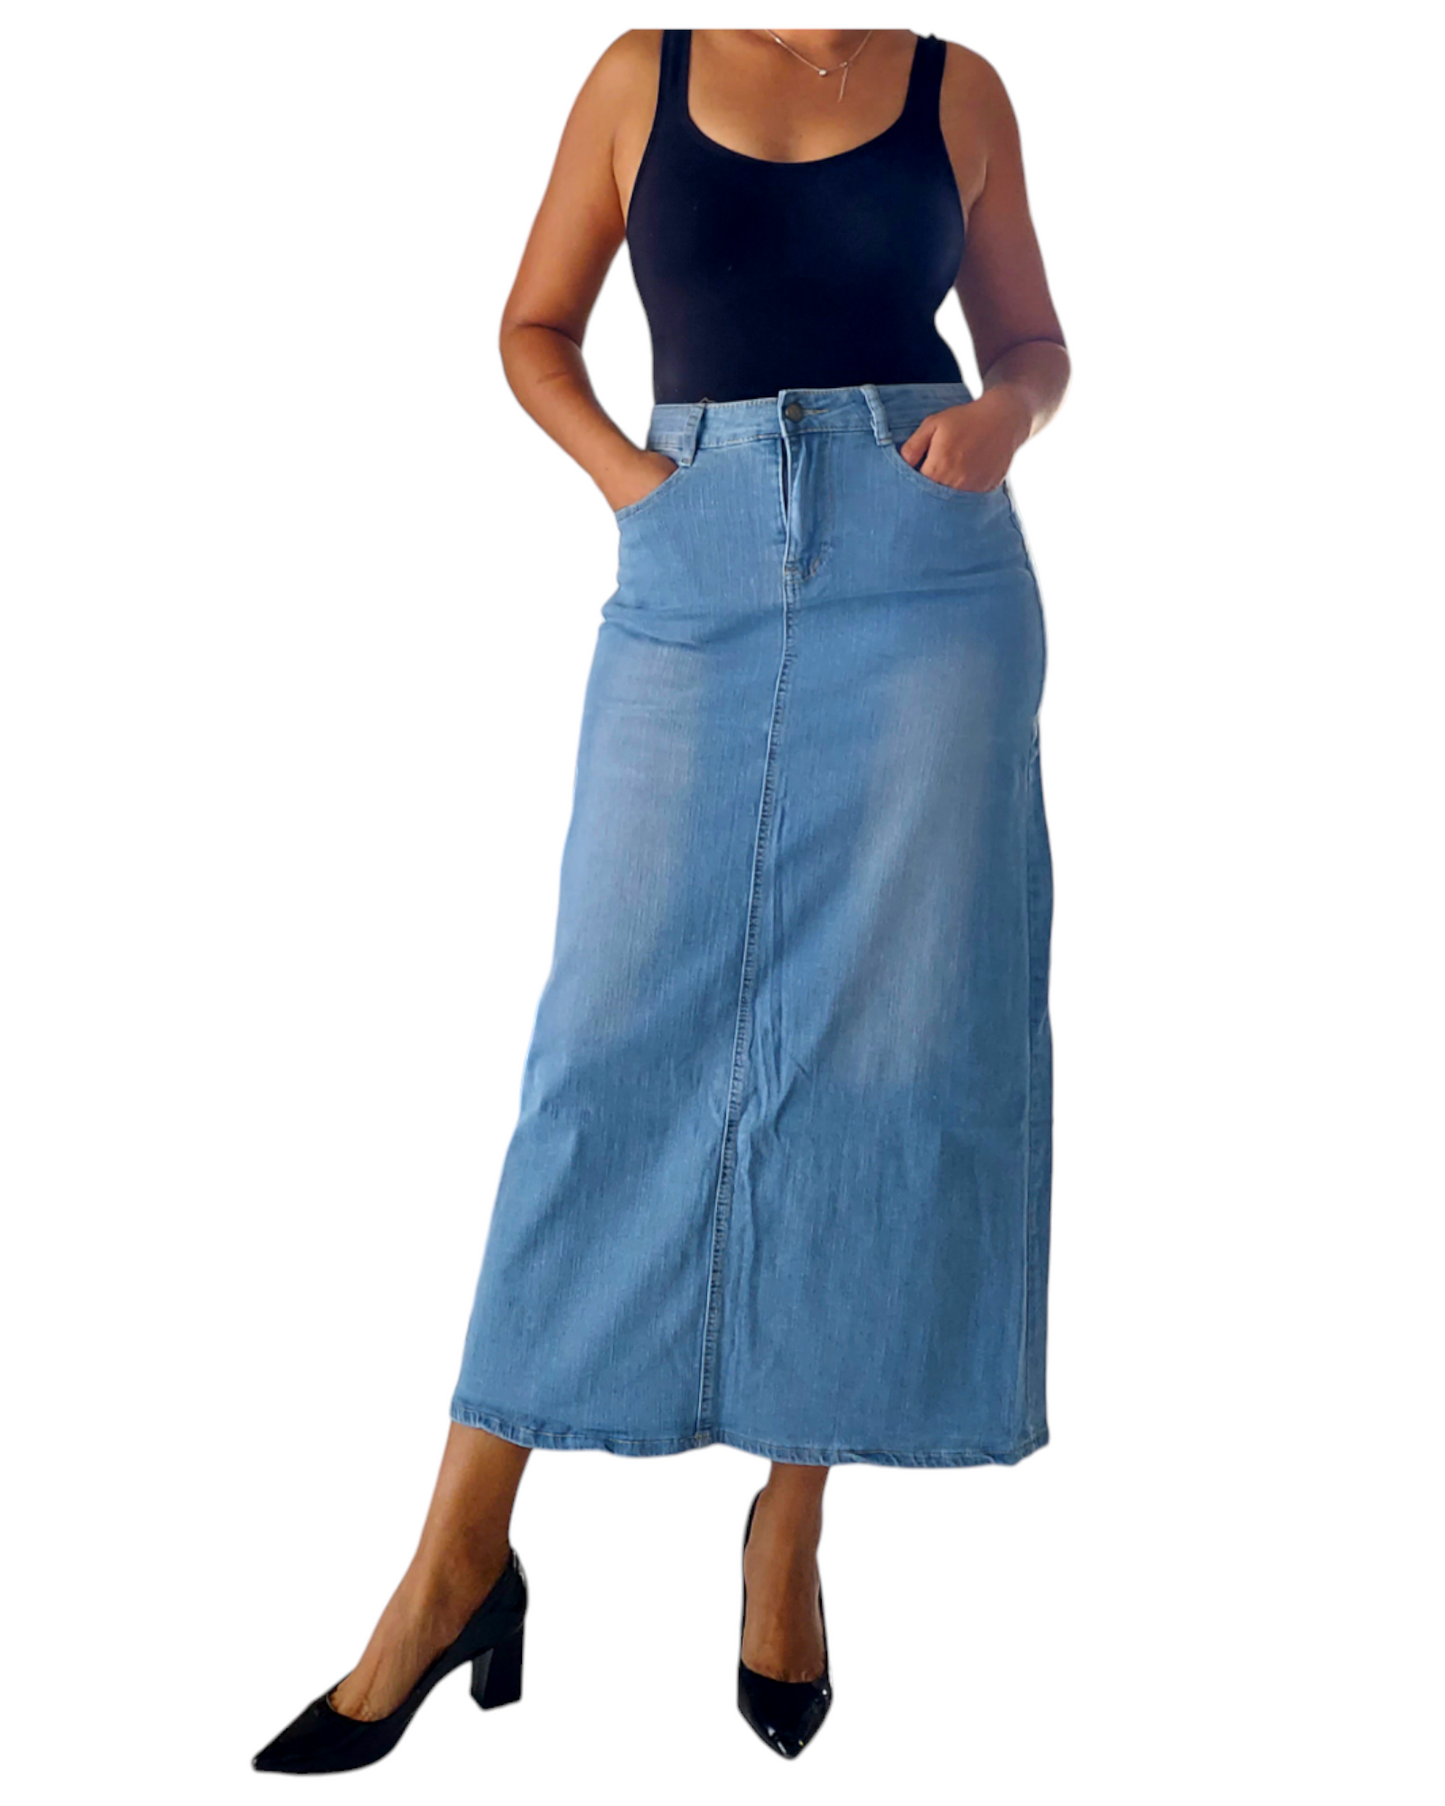 Denim Long Skirt - P3356 Ligth Blue